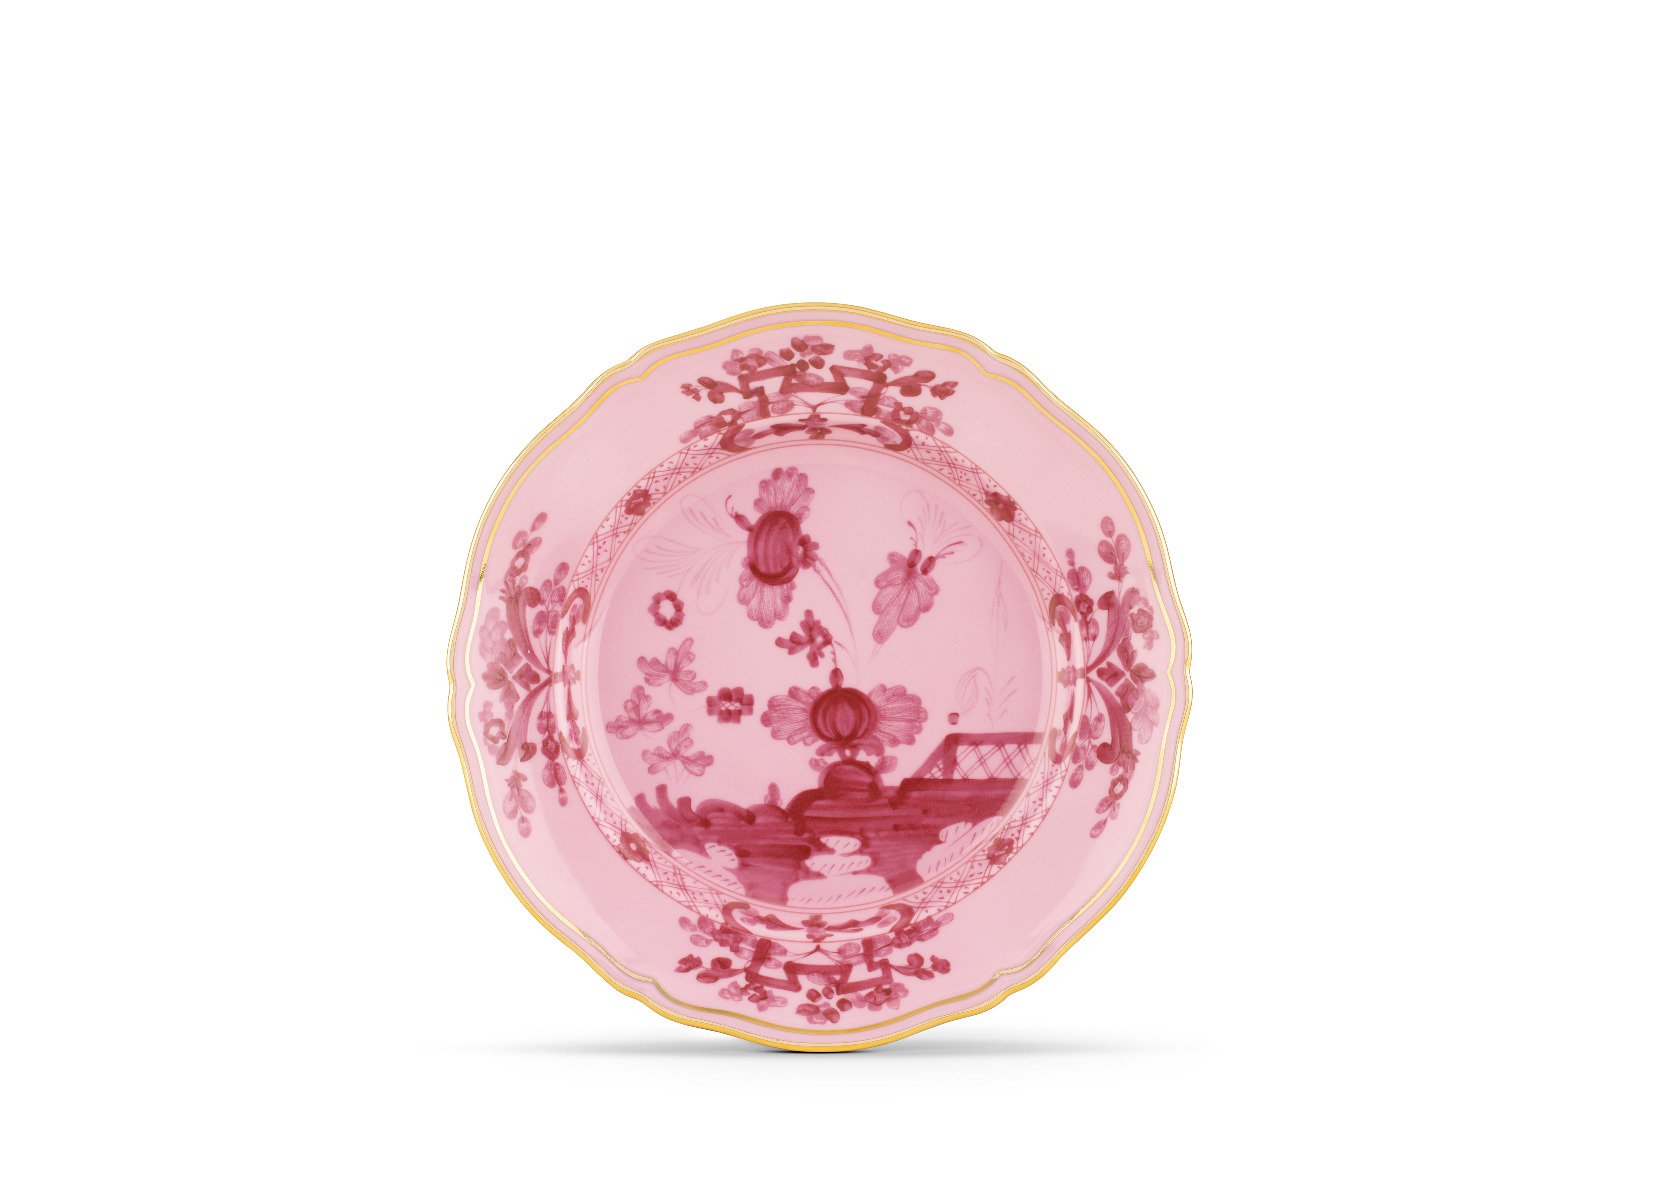 Richard Ginori 1735 "Porpora" Porpora Dessert Plate